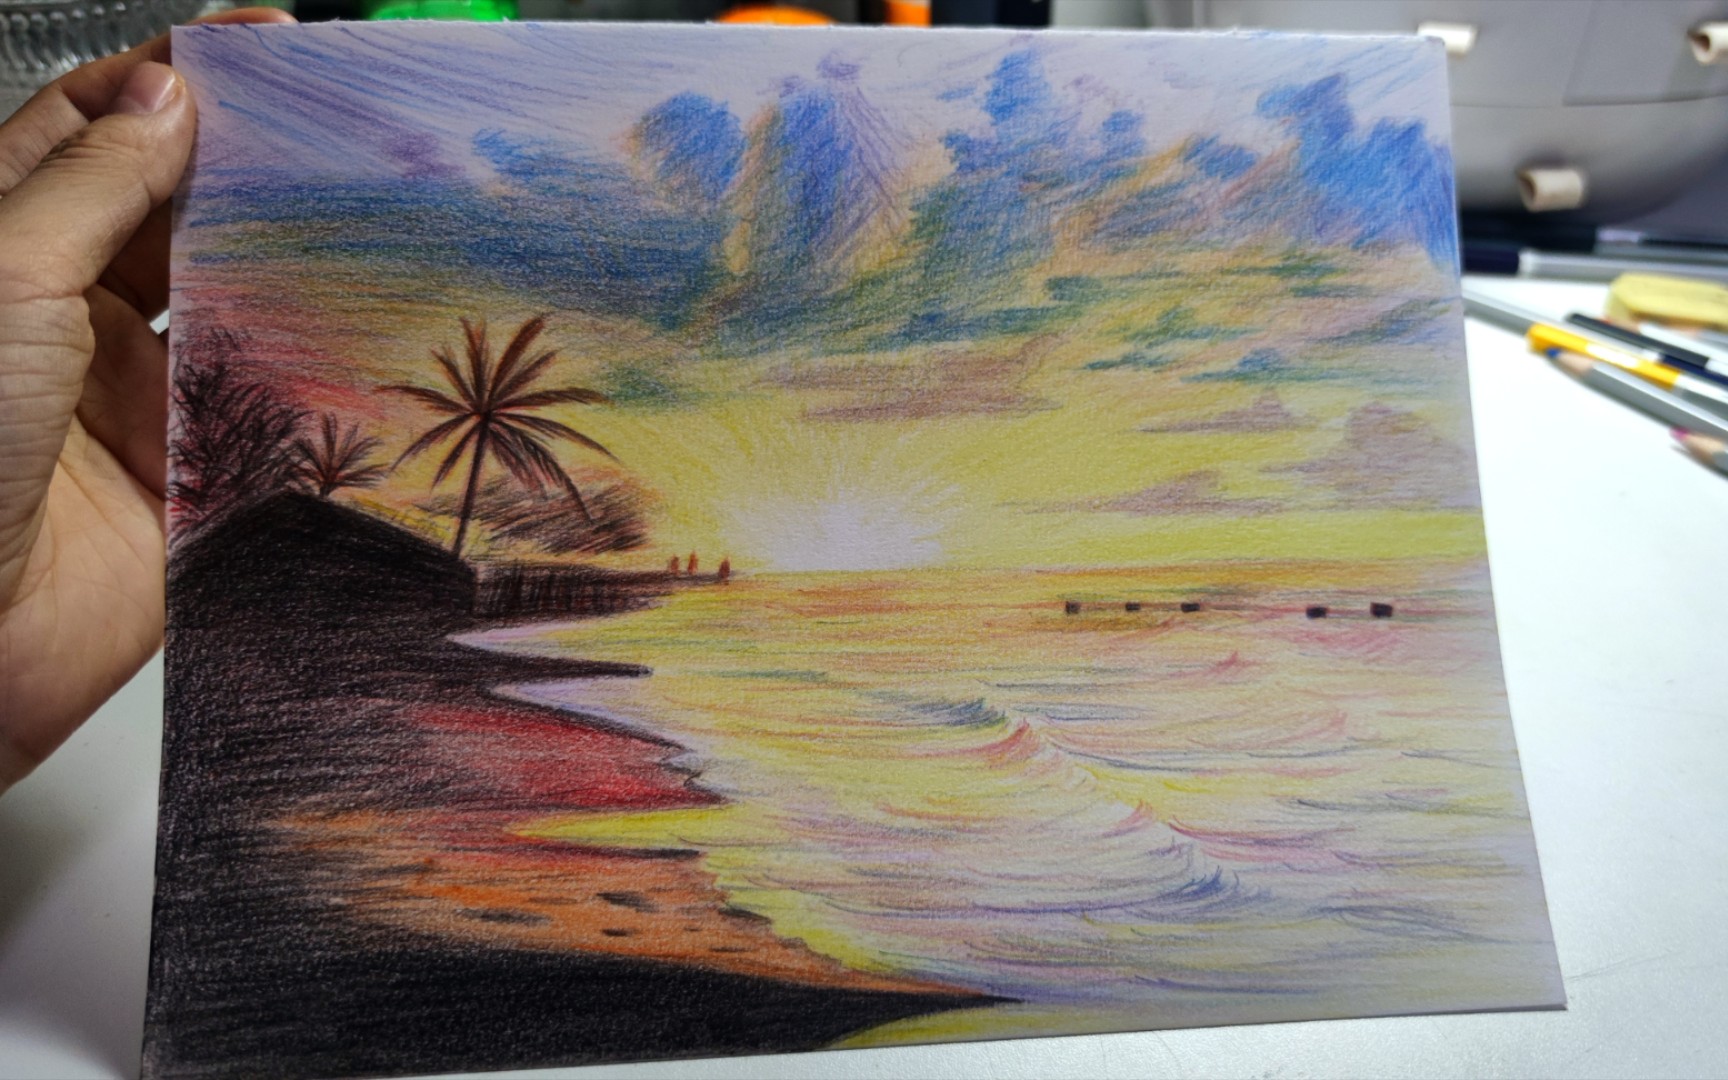 【彩铅画】海边落日~用一首歌的时间看完绘画过程吧